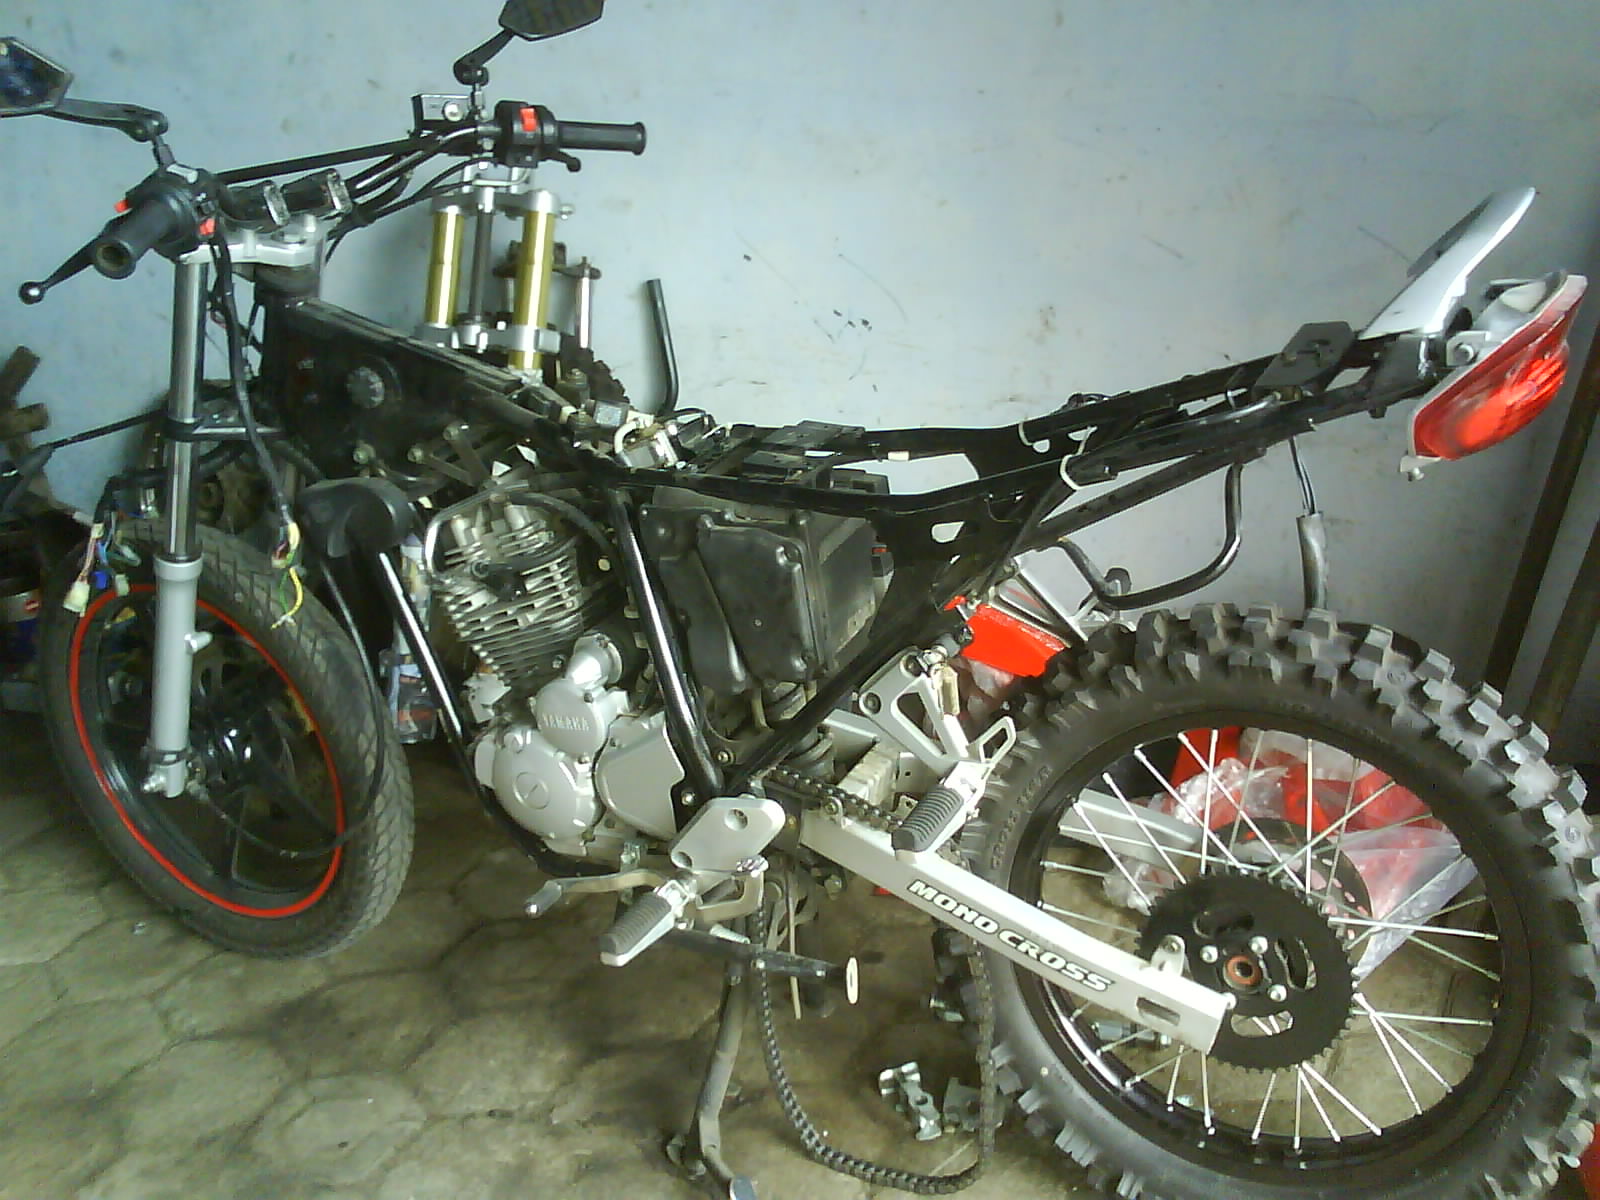 Merubah Rangka Scorpio Jadi Trail. Koleksi 74 Modifikasi Rangka Yamaha Scorpio Menjadi Trail Terkeren